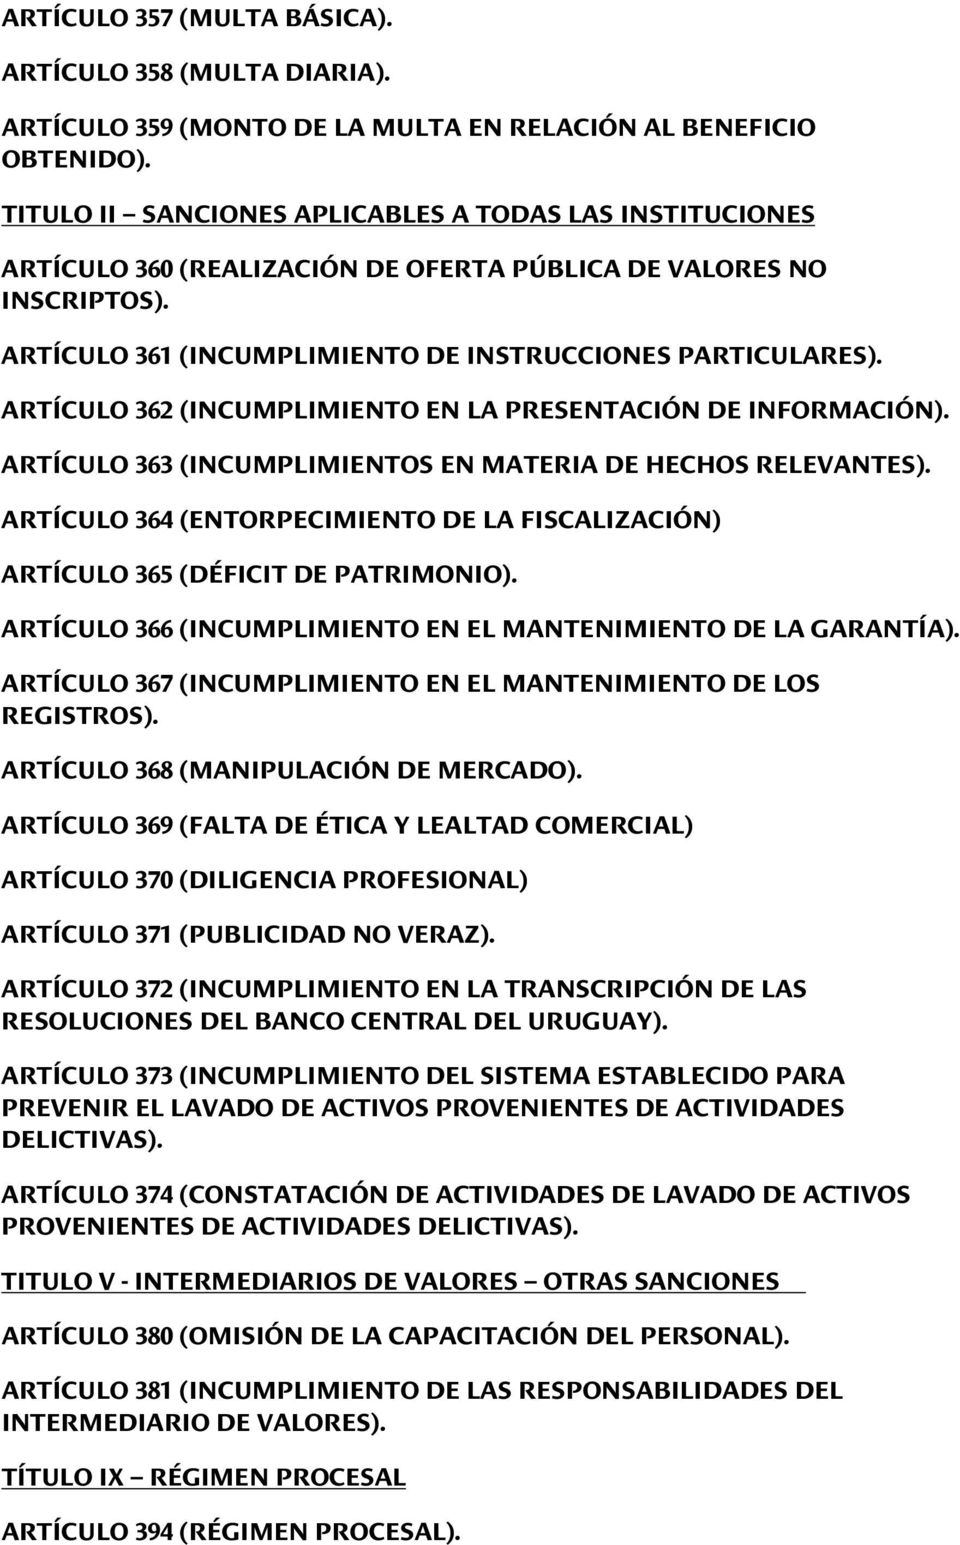 ARTÍCULO 362 (INCUMPLIMIENTO EN LA PRESENTACIÓN DE INFORMACIÓN). ARTÍCULO 363 (INCUMPLIMIENTOS EN MATERIA DE HECHOS RELEVANTES).